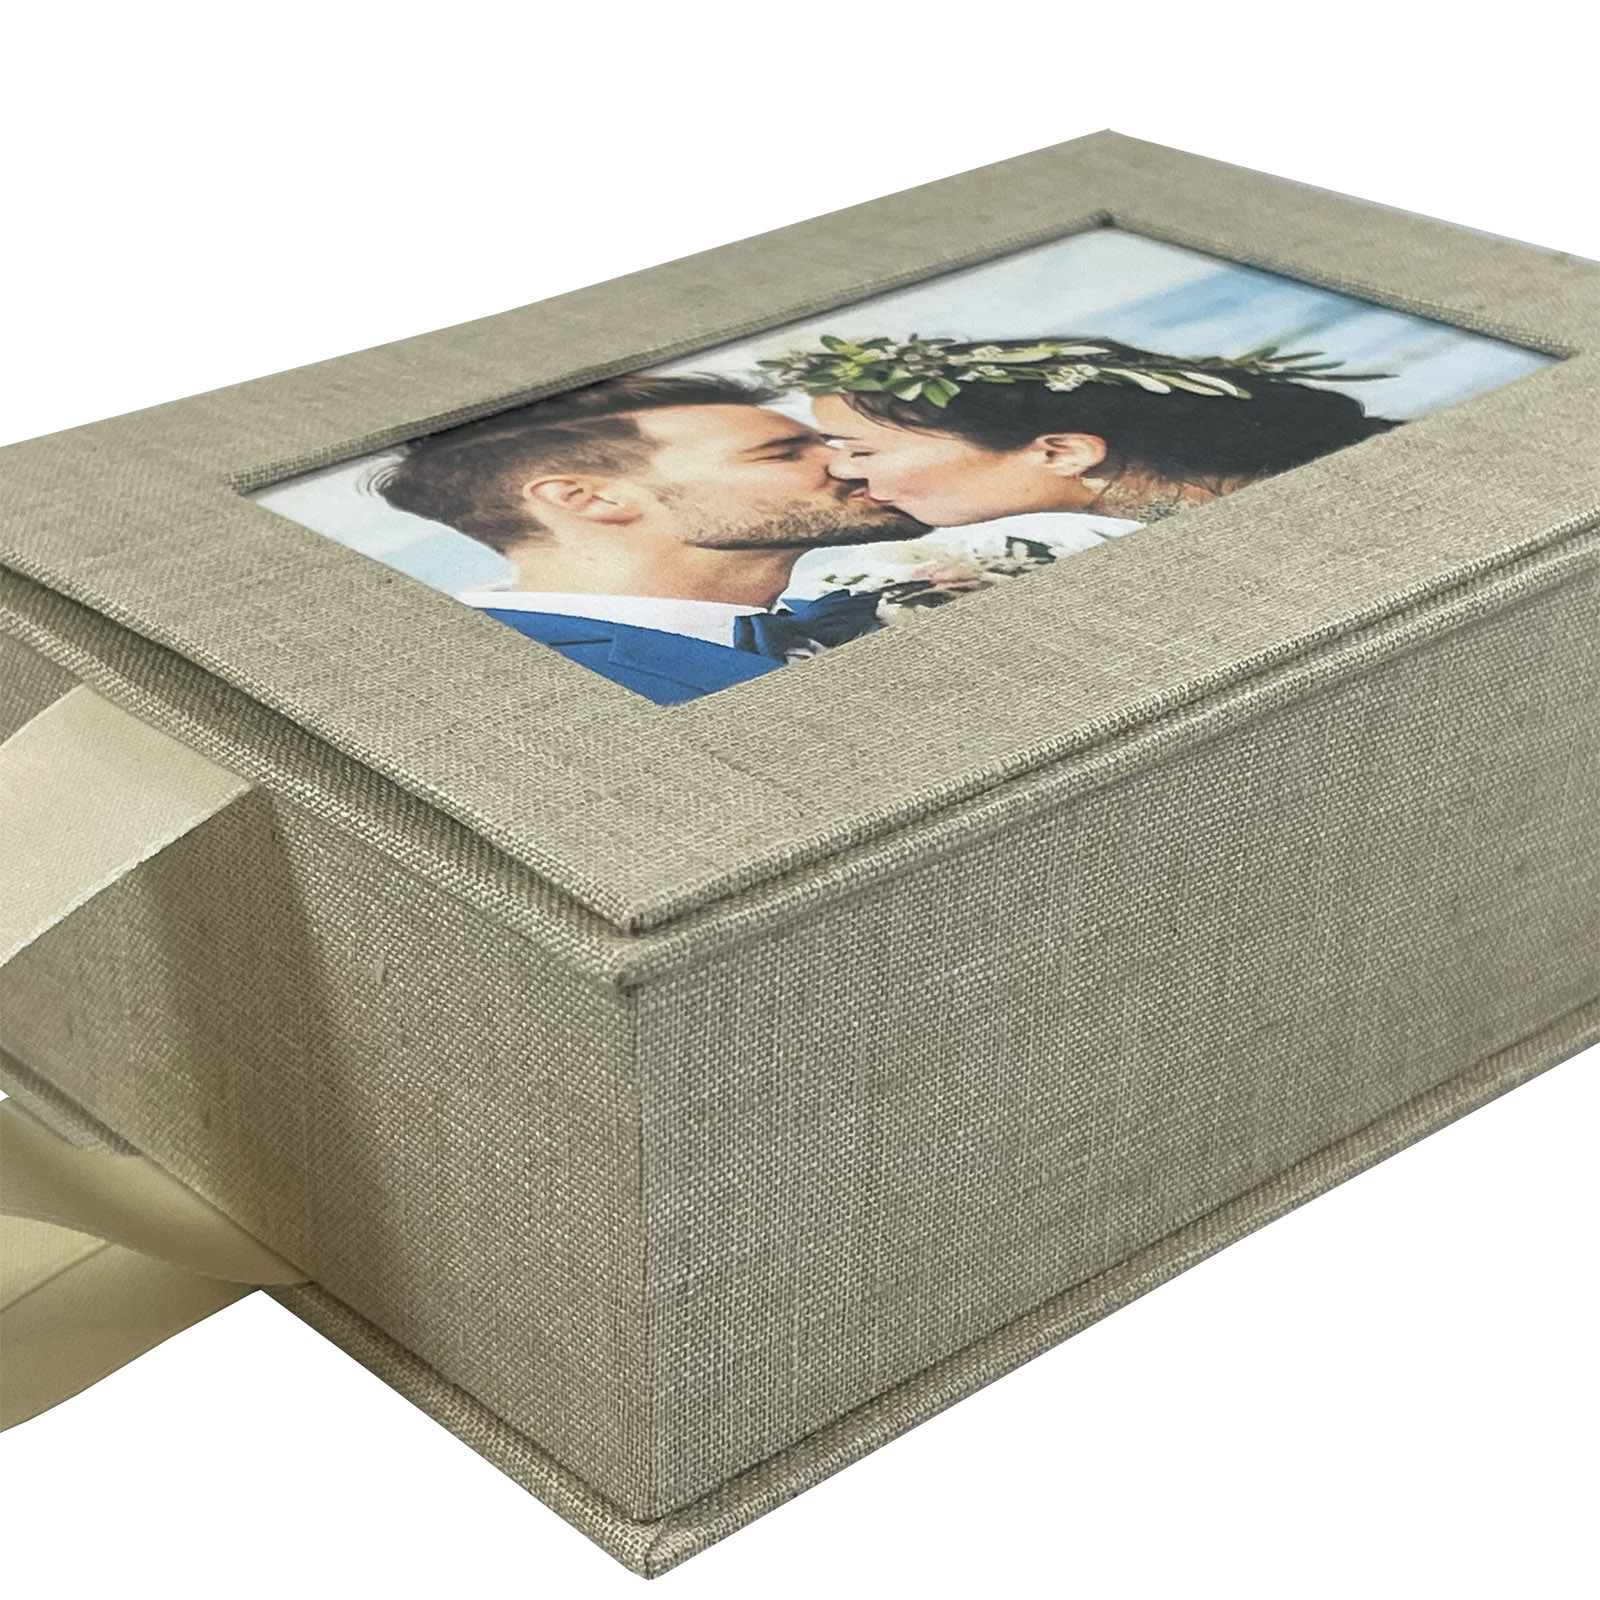 Linen Photo Boxes